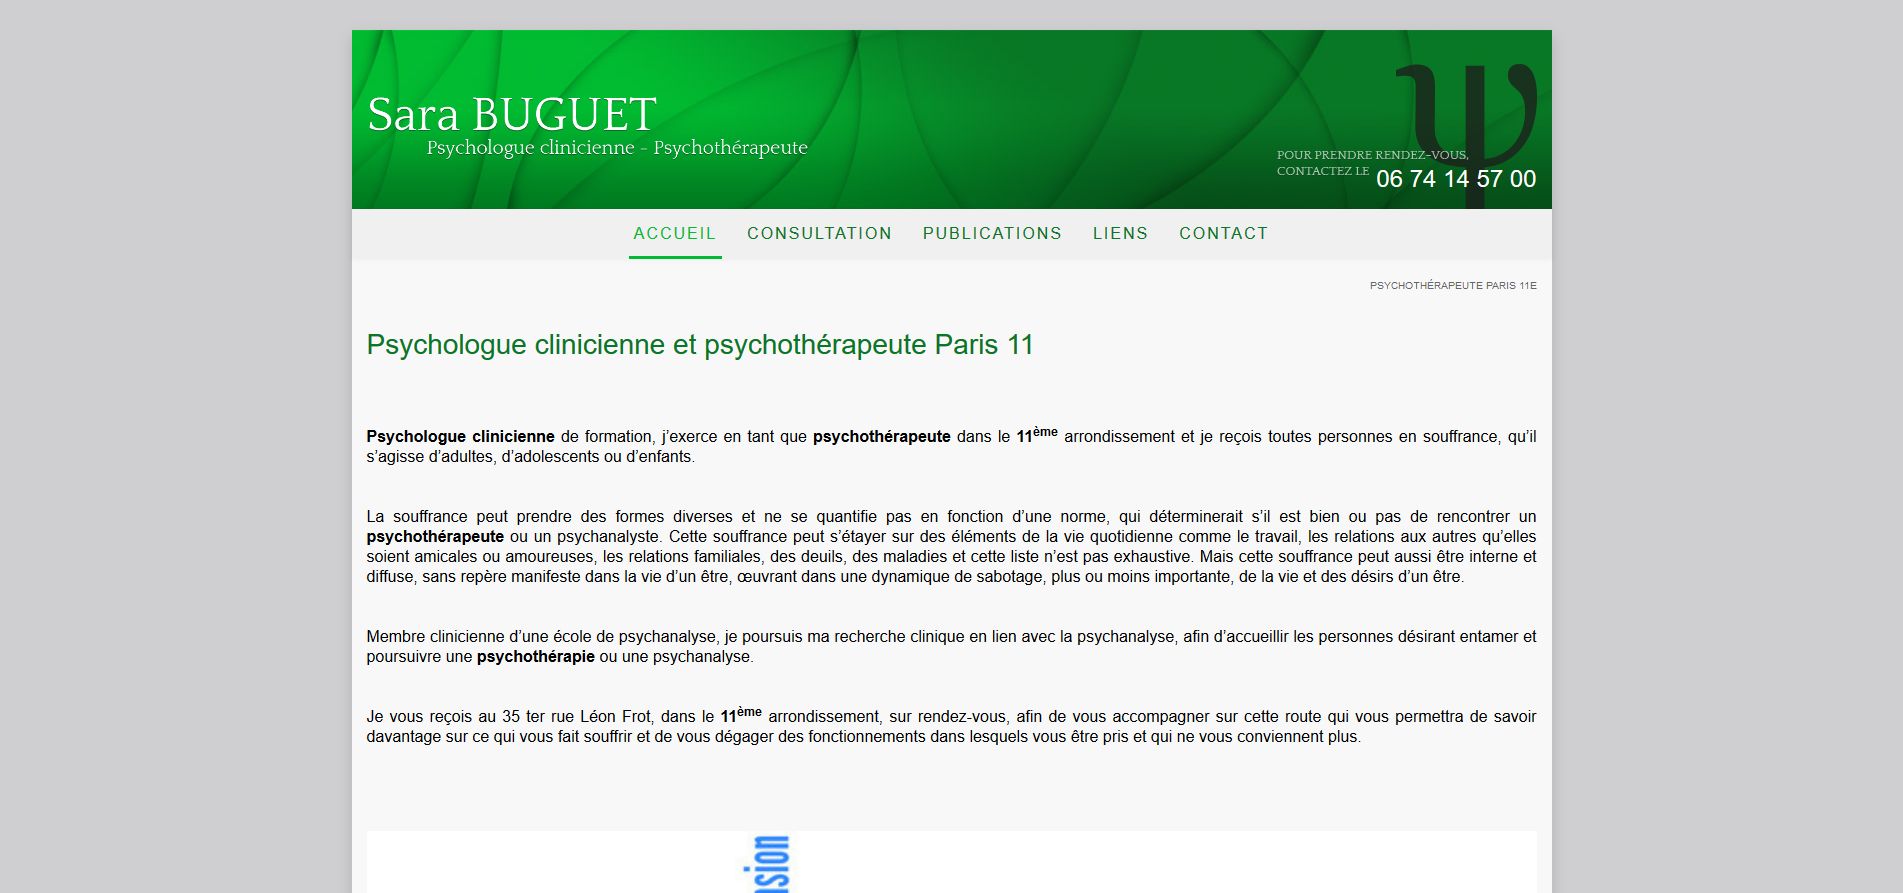 Sara Buguet – Psychologue clinicienne et psychothérapeute à Paris